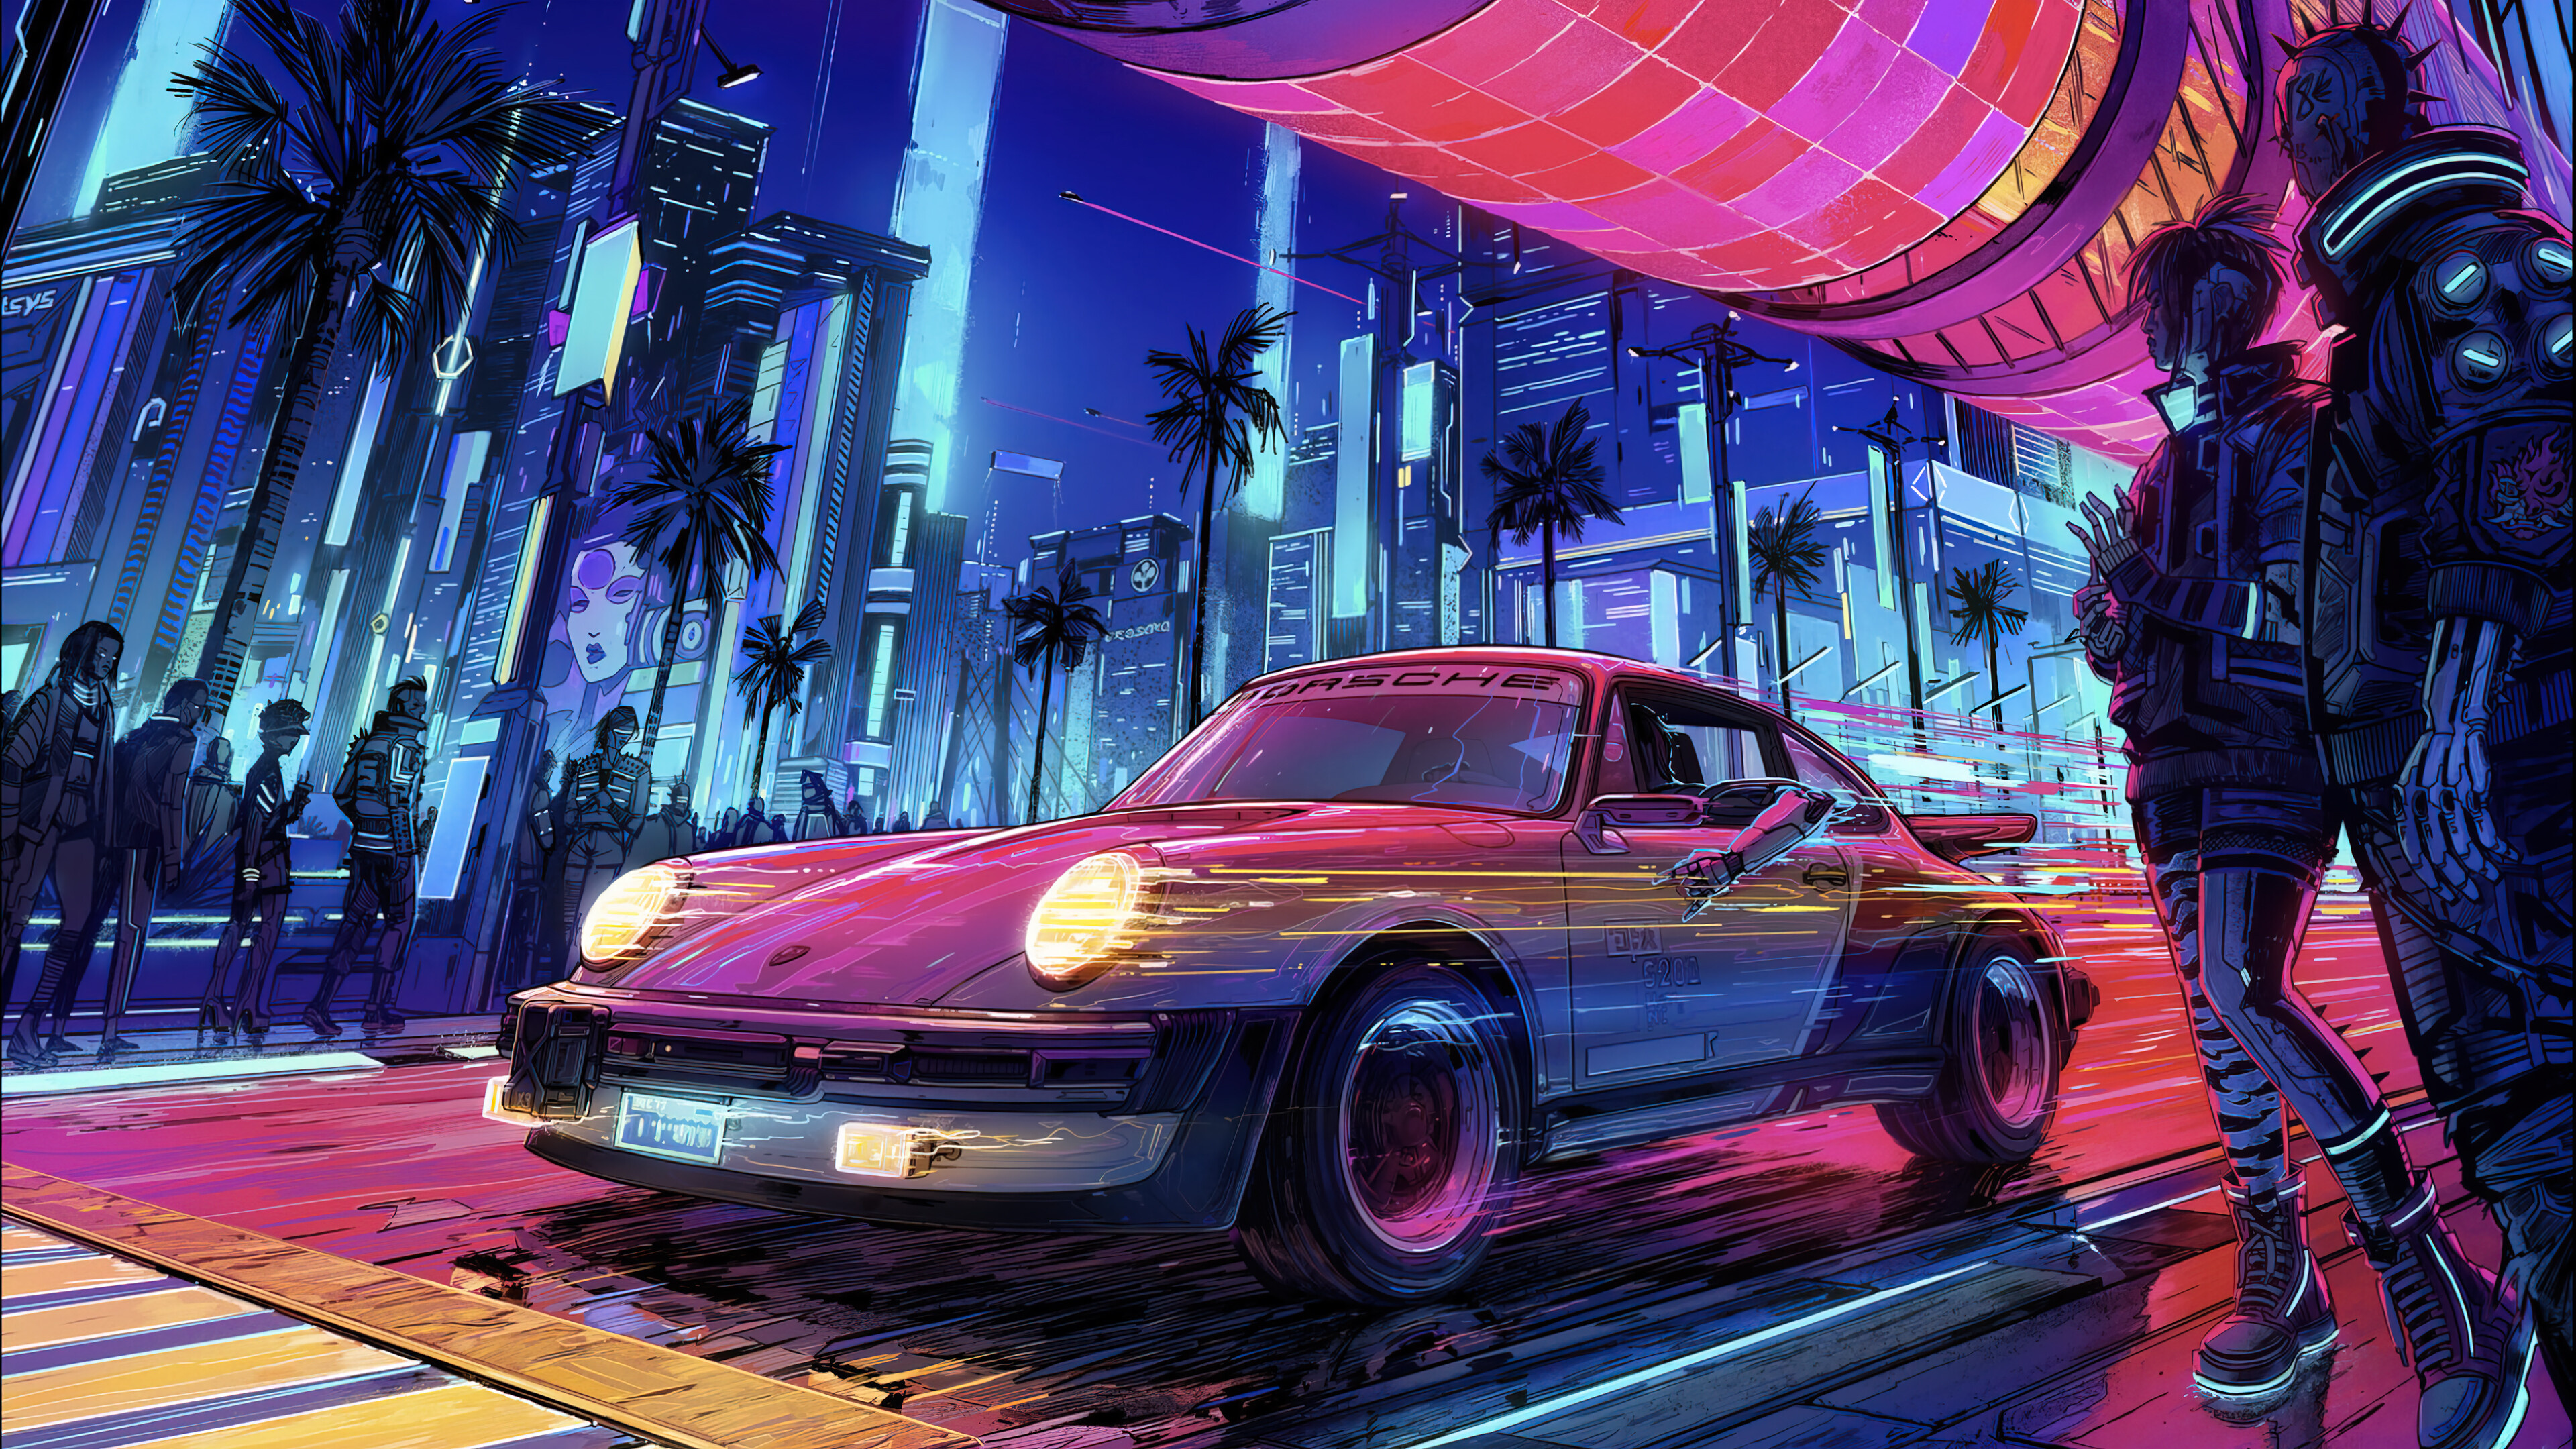 Sports Car: Cyberpunk Night City, Porsche, A high-performance vehicle. 3840x2160 4K Wallpaper.